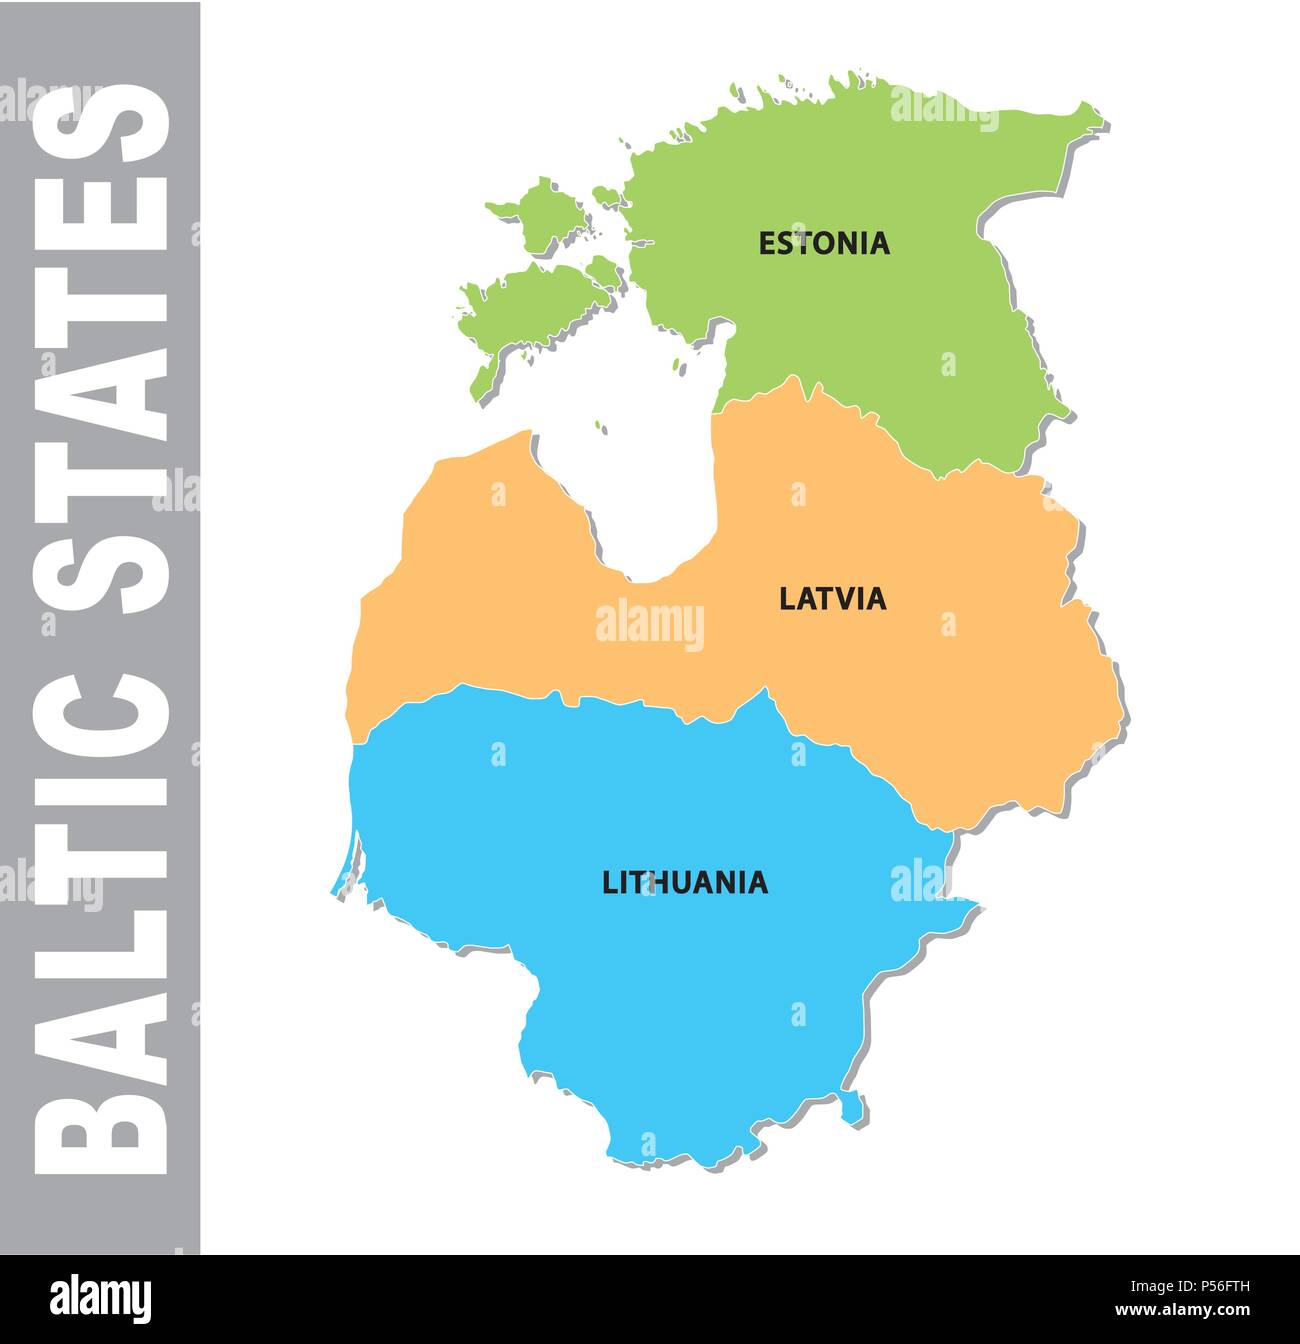 États baltes colorés carte vectorielle administrative et politique Illustration de Vecteur